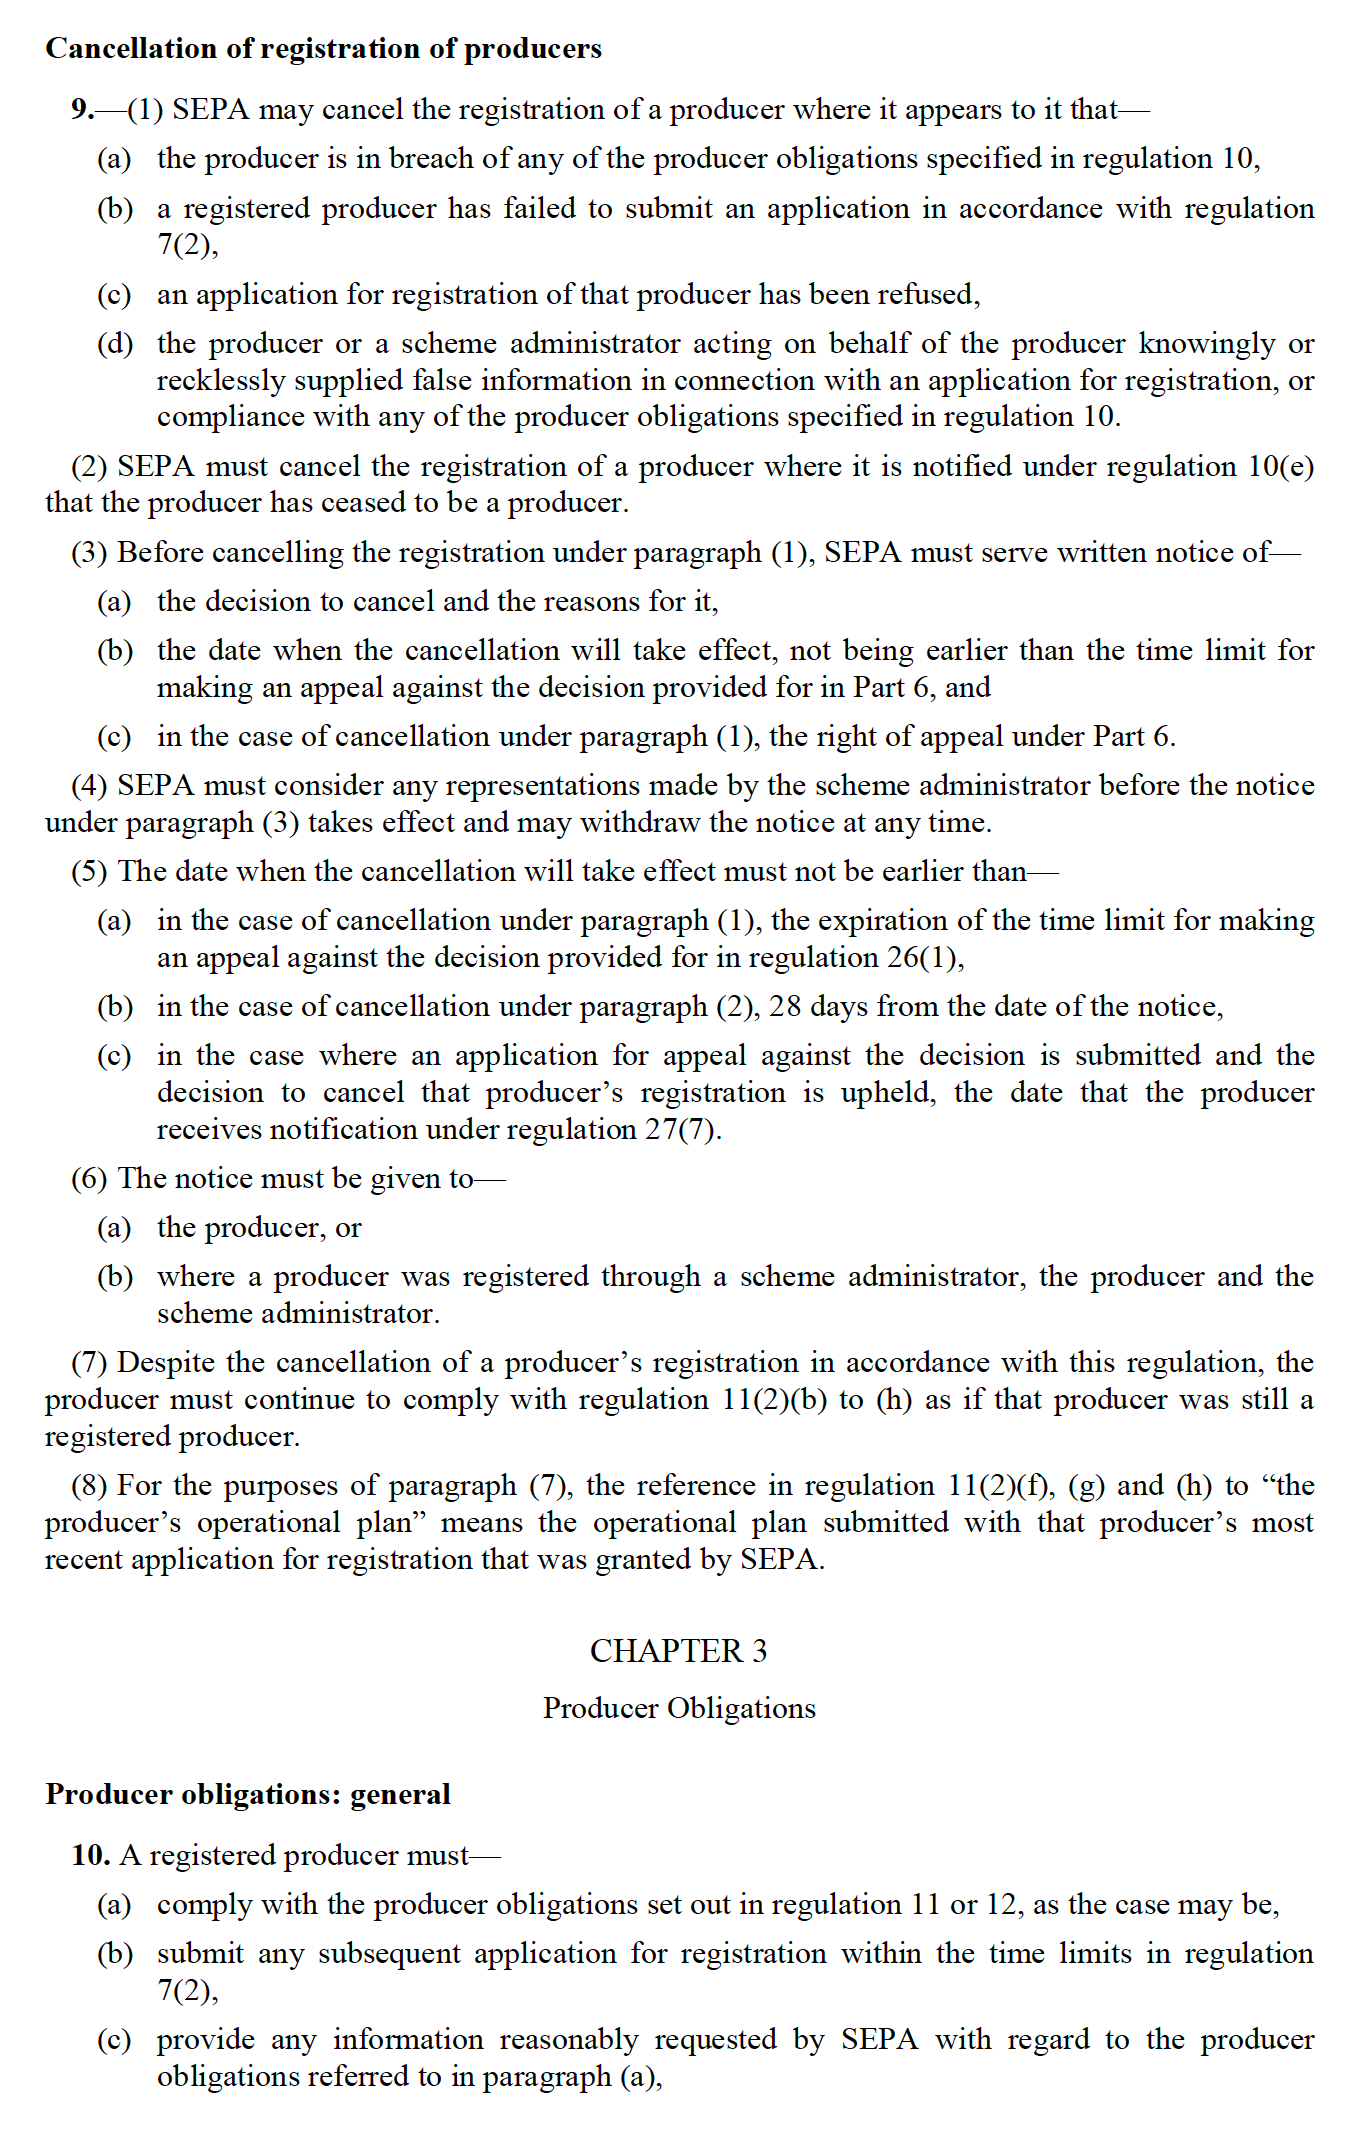 Regulations - part 7